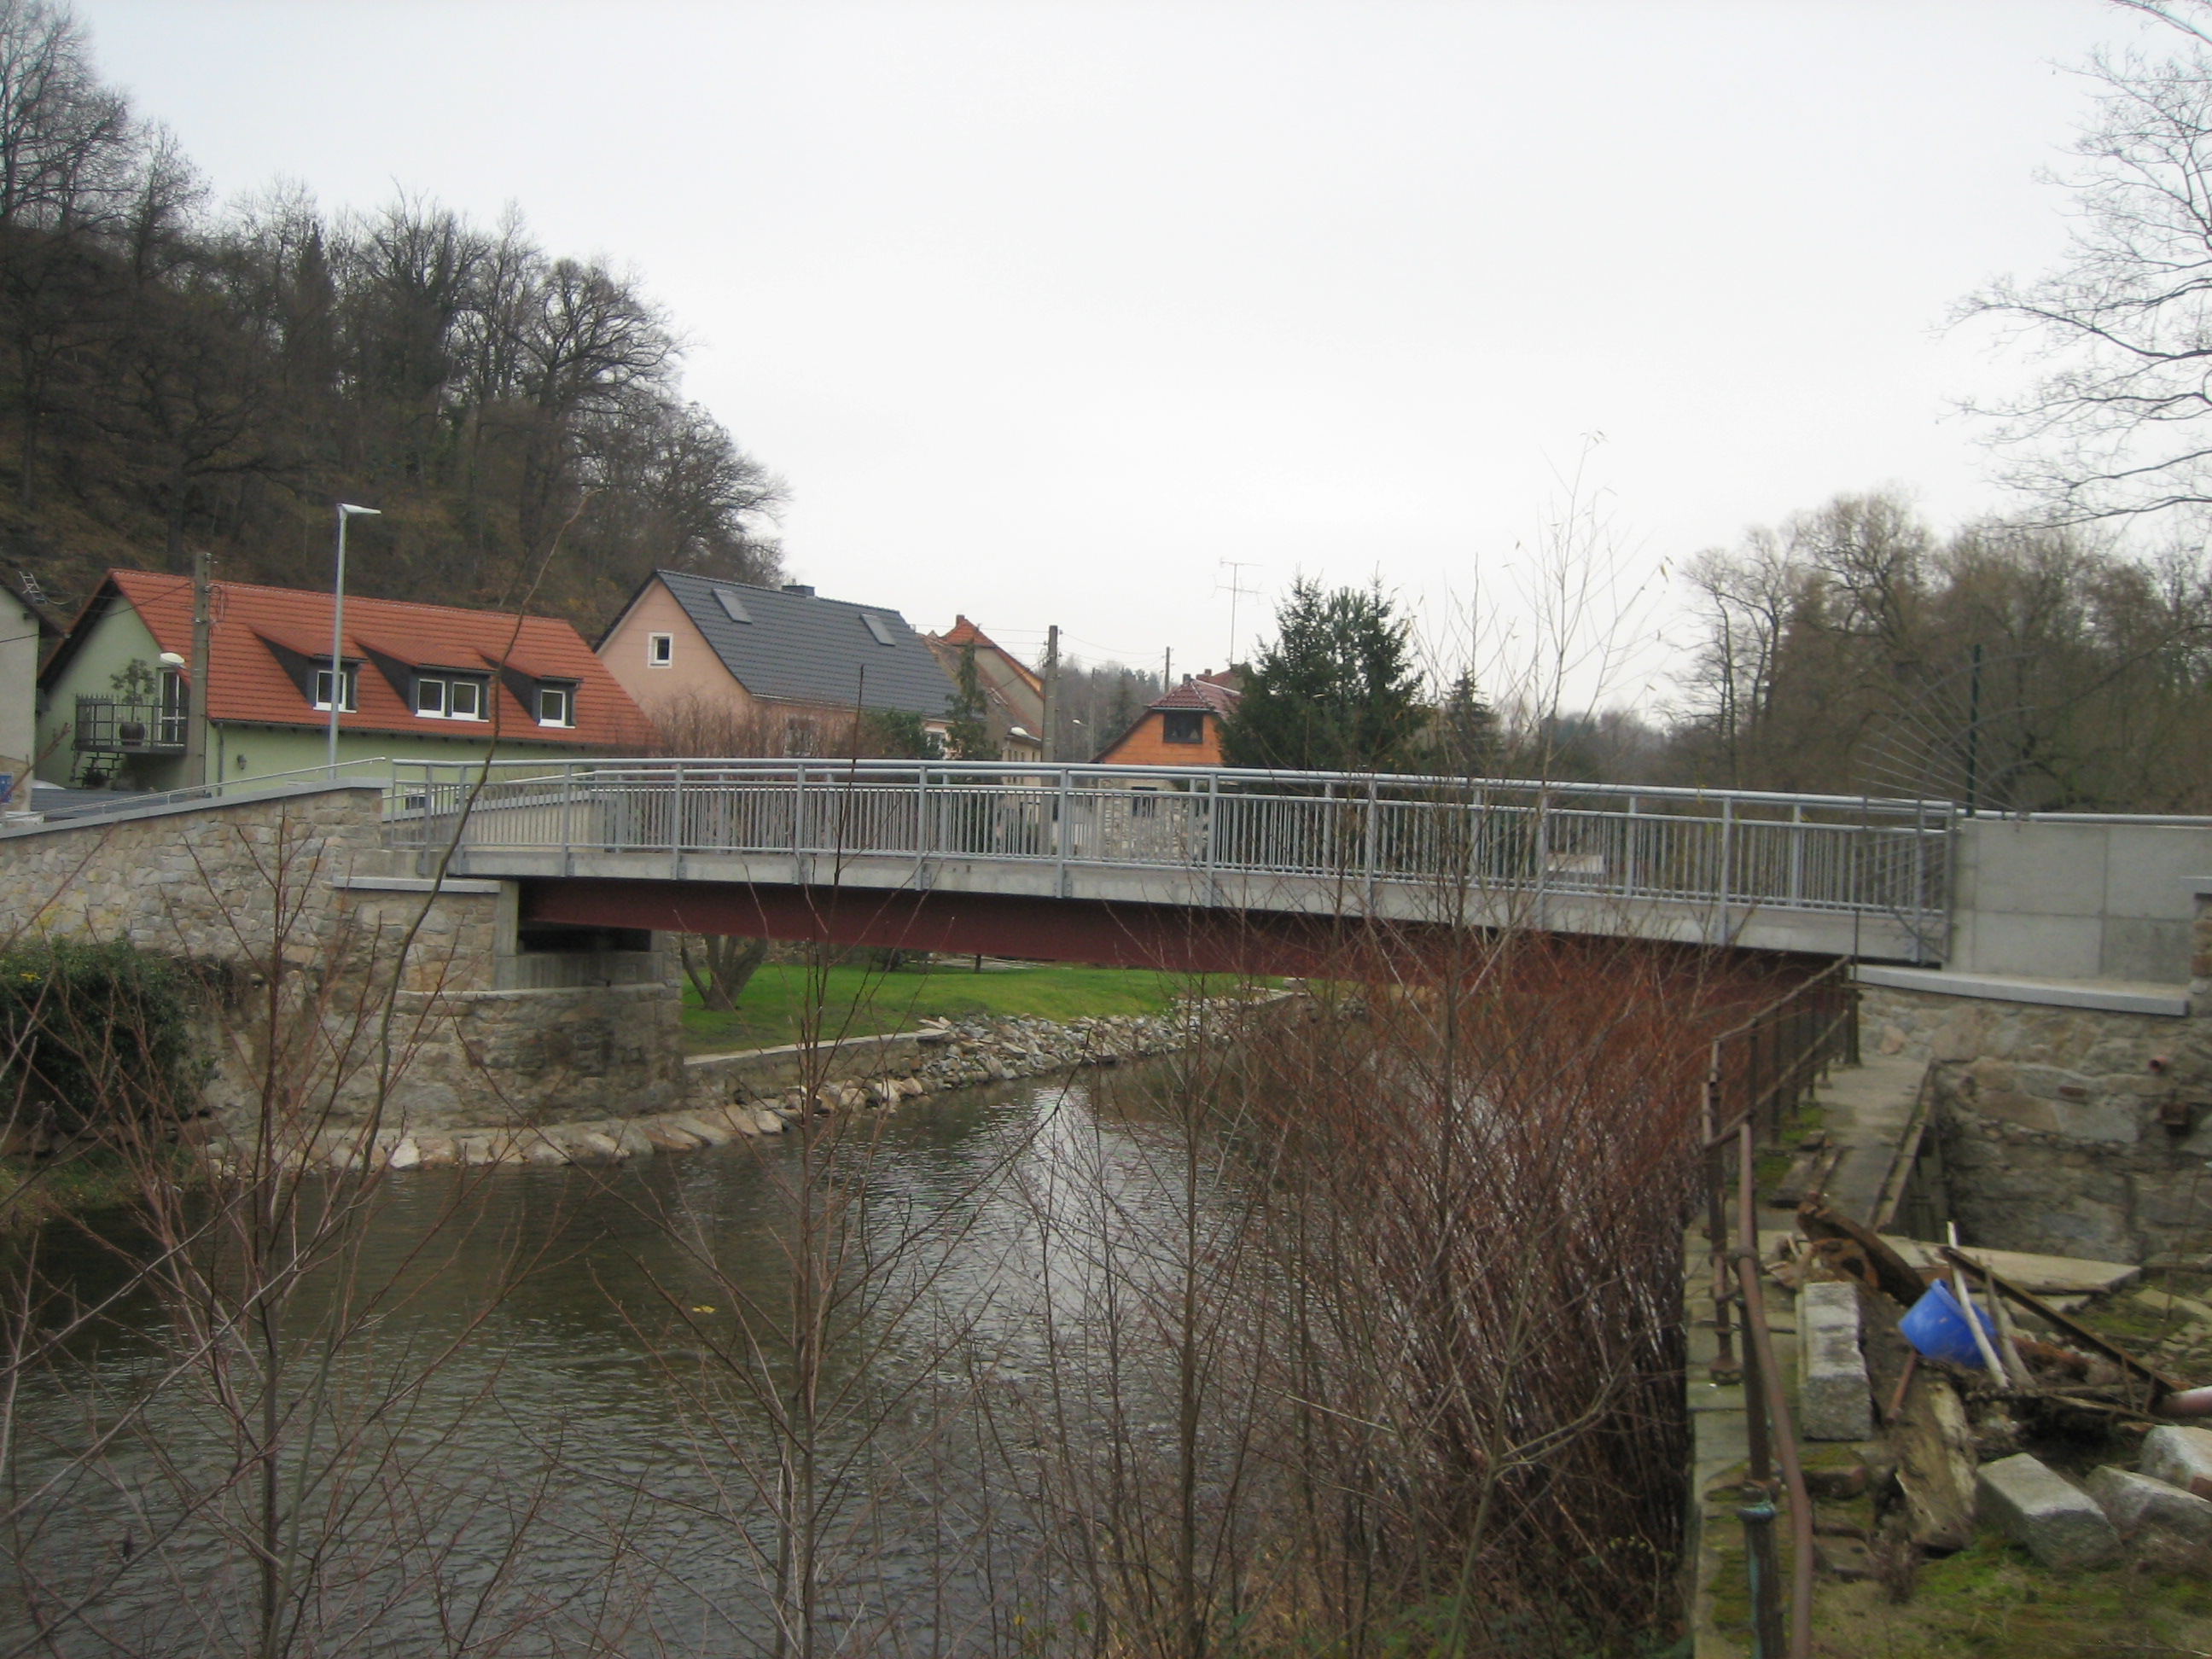 Bautzen - Brücke über die Spree, BW 9 - Road and bridge construction